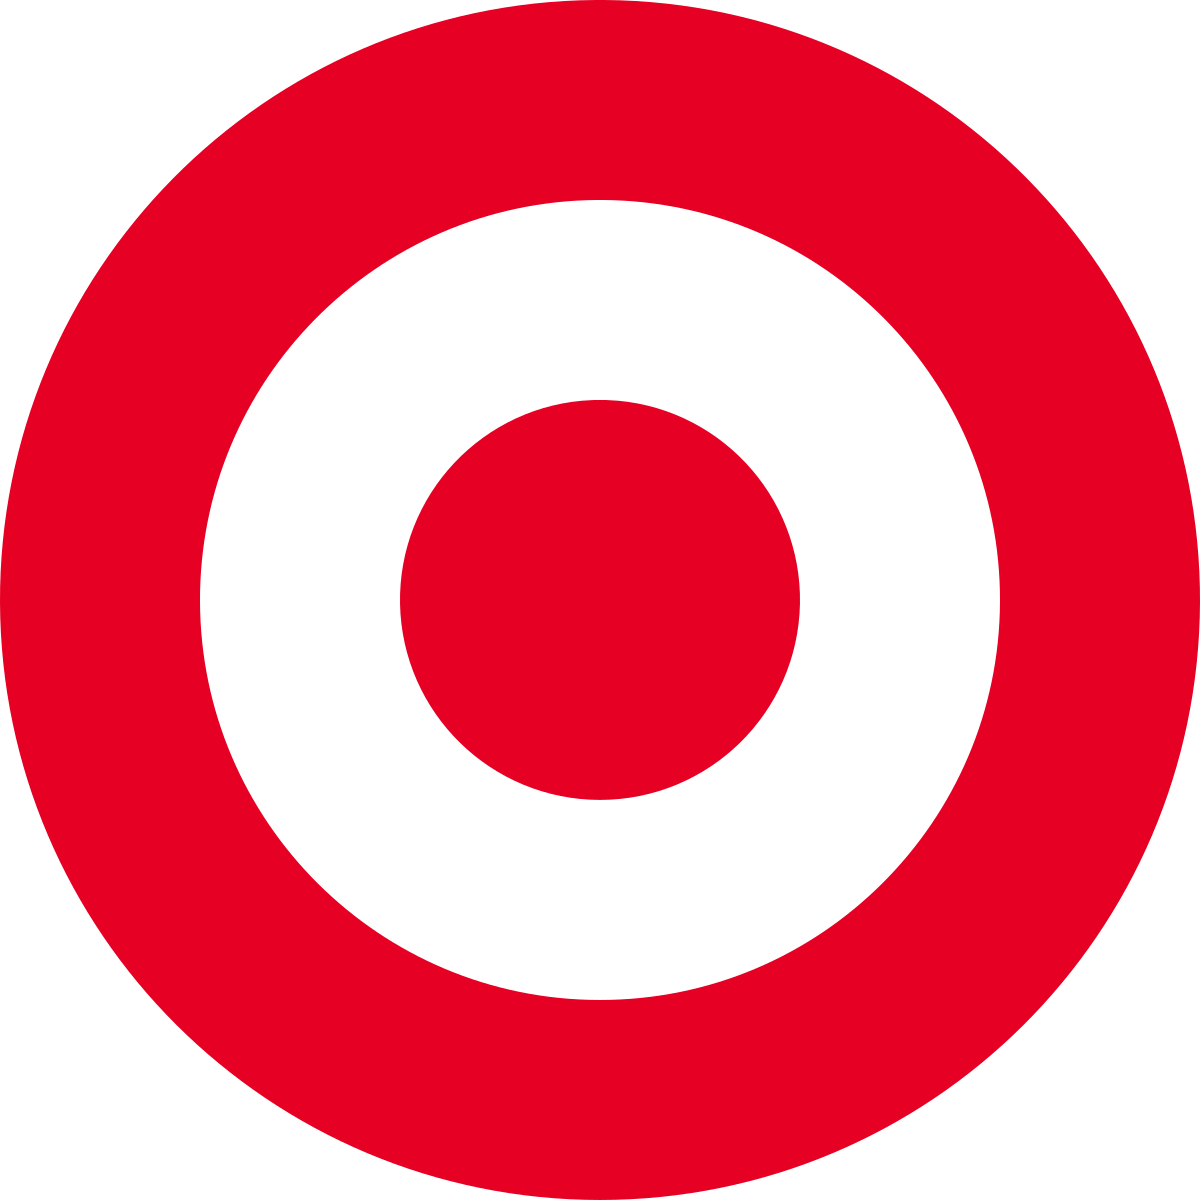 Black Target Circle Logo - Target Corporation